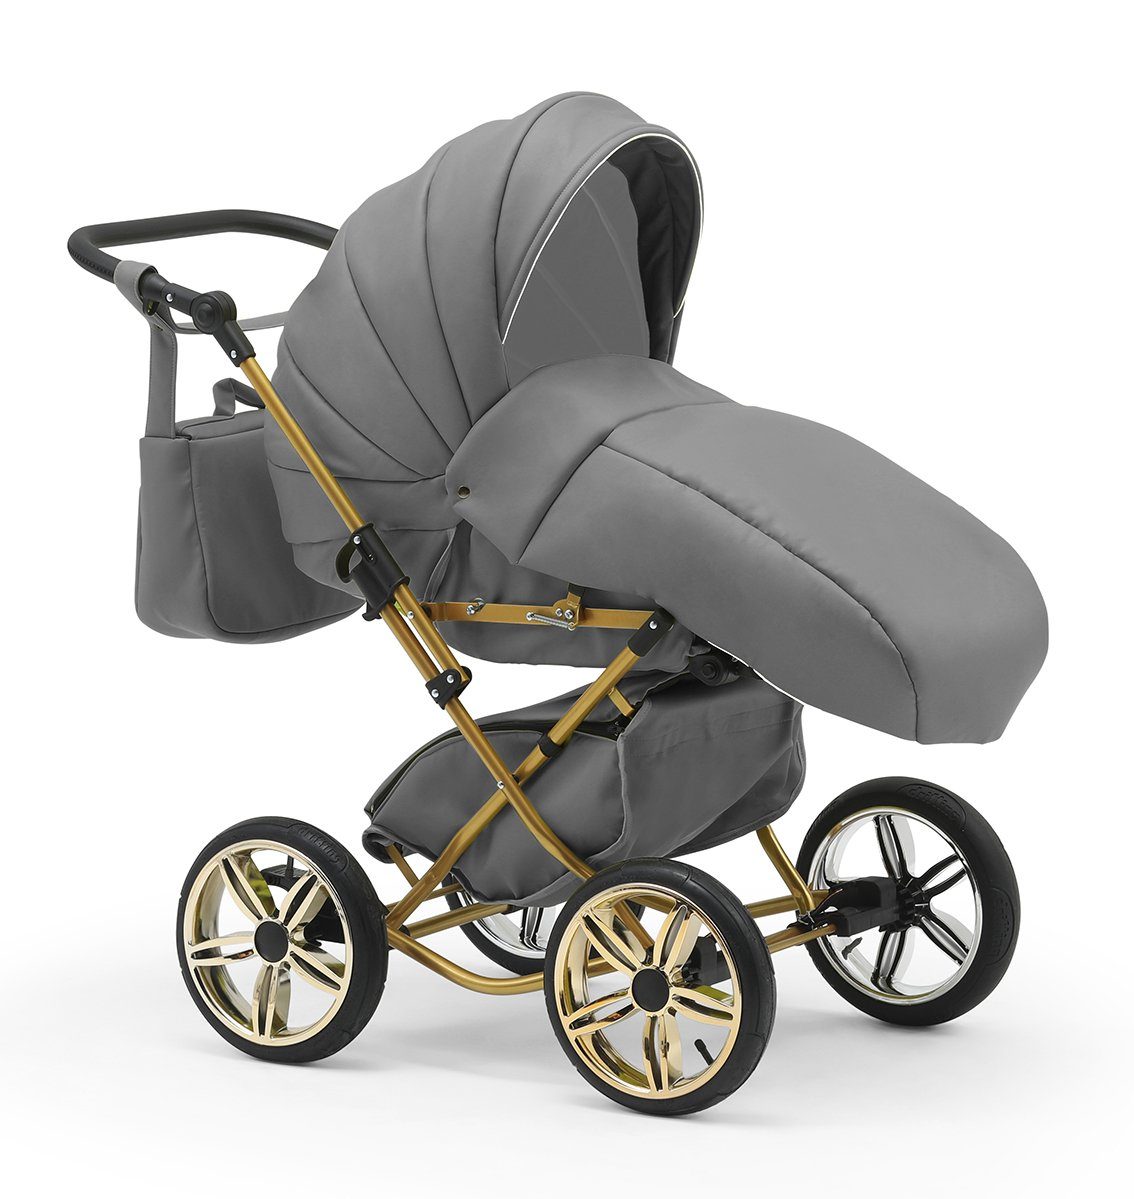 Sorento - Hellgrau Geburt 11 30 von Jahre 4 in Kombi-Kinderwagen in 1 Designs bis - 2 babies-on-wheels Teile